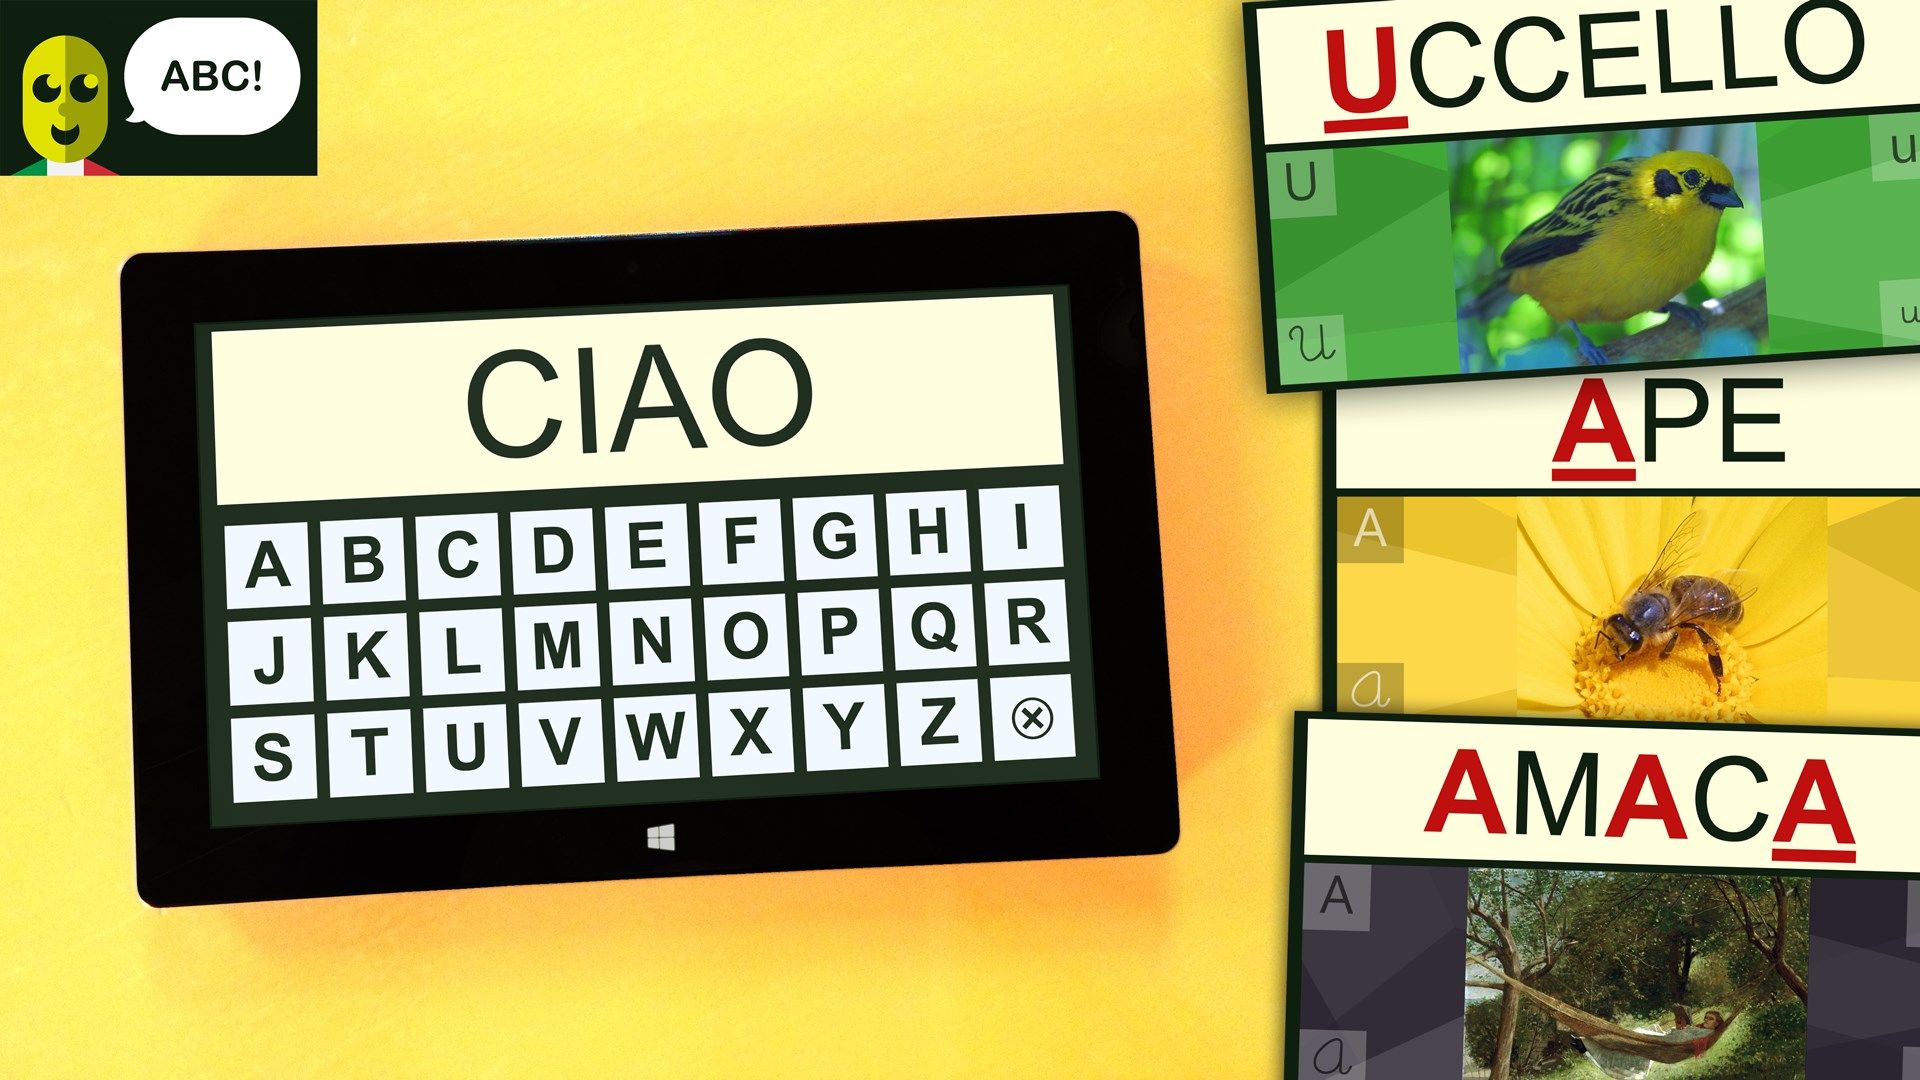 Alfabetiere vocale interattivo italiano con oltre 200 parole e immagini per imparare divertendosi le lettere e i suoni dell'alfabeto.